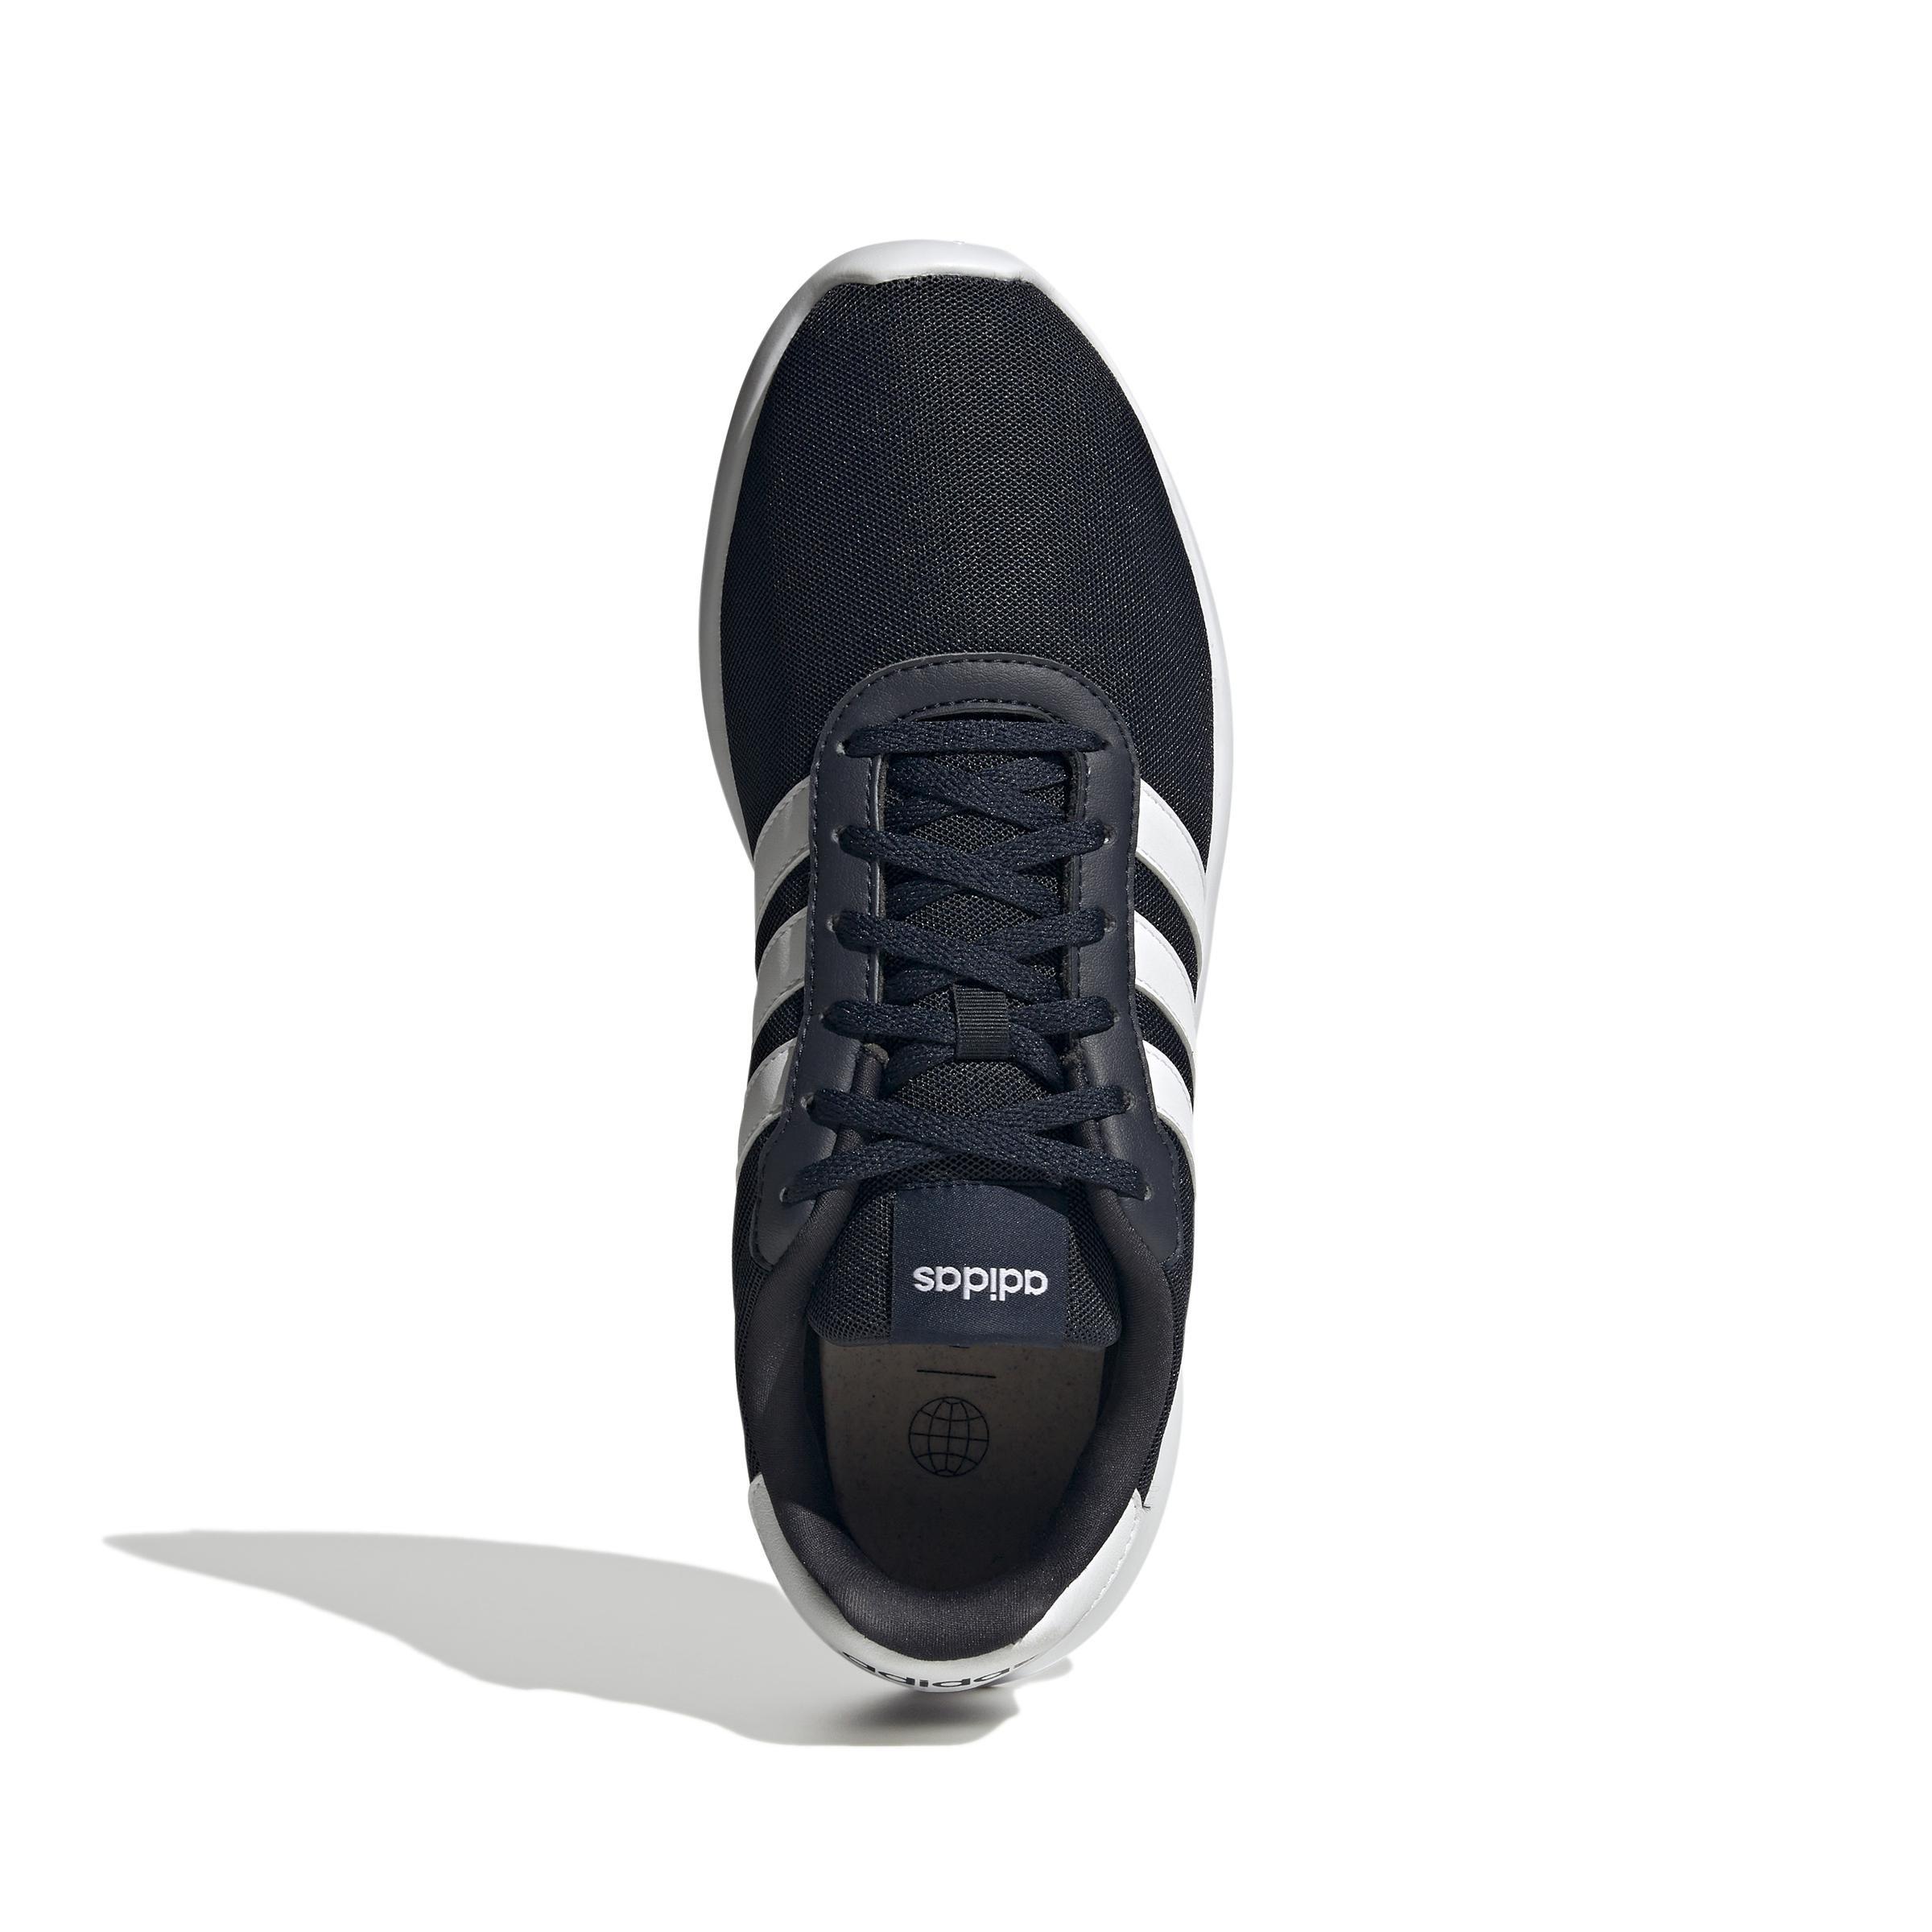 adidas - Men Lite Racer 3.0 Shoes Legend, Black